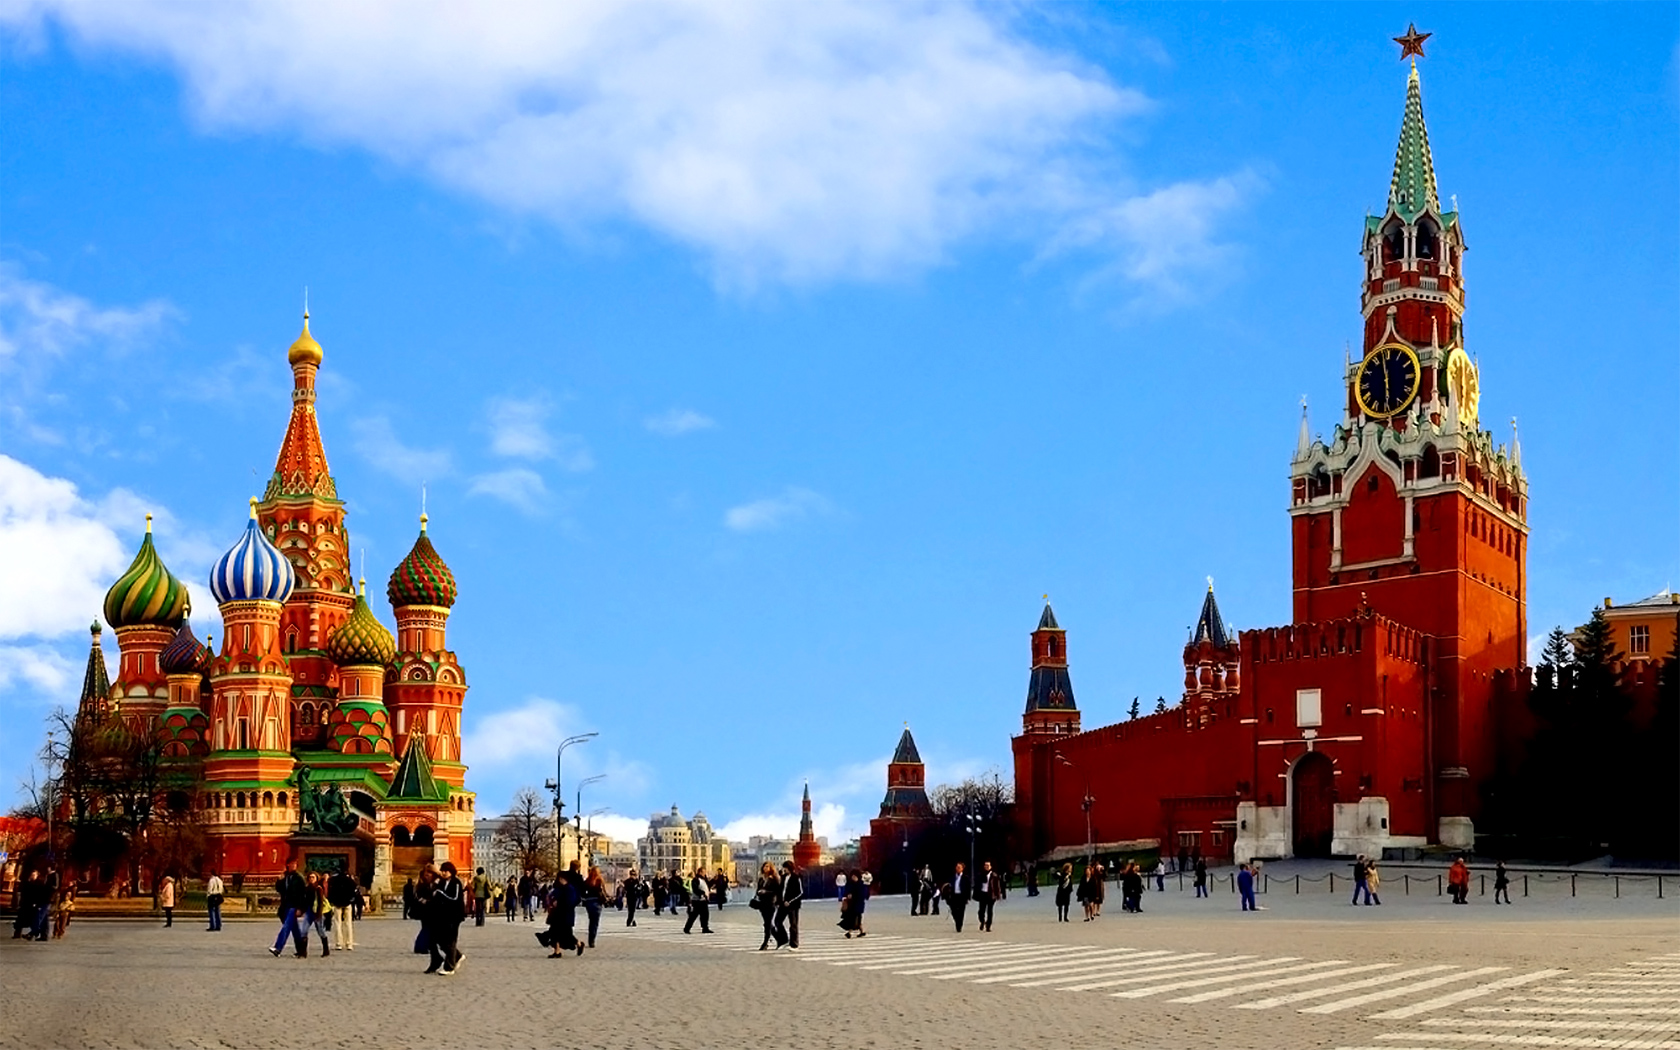 Московский кремль символ россии